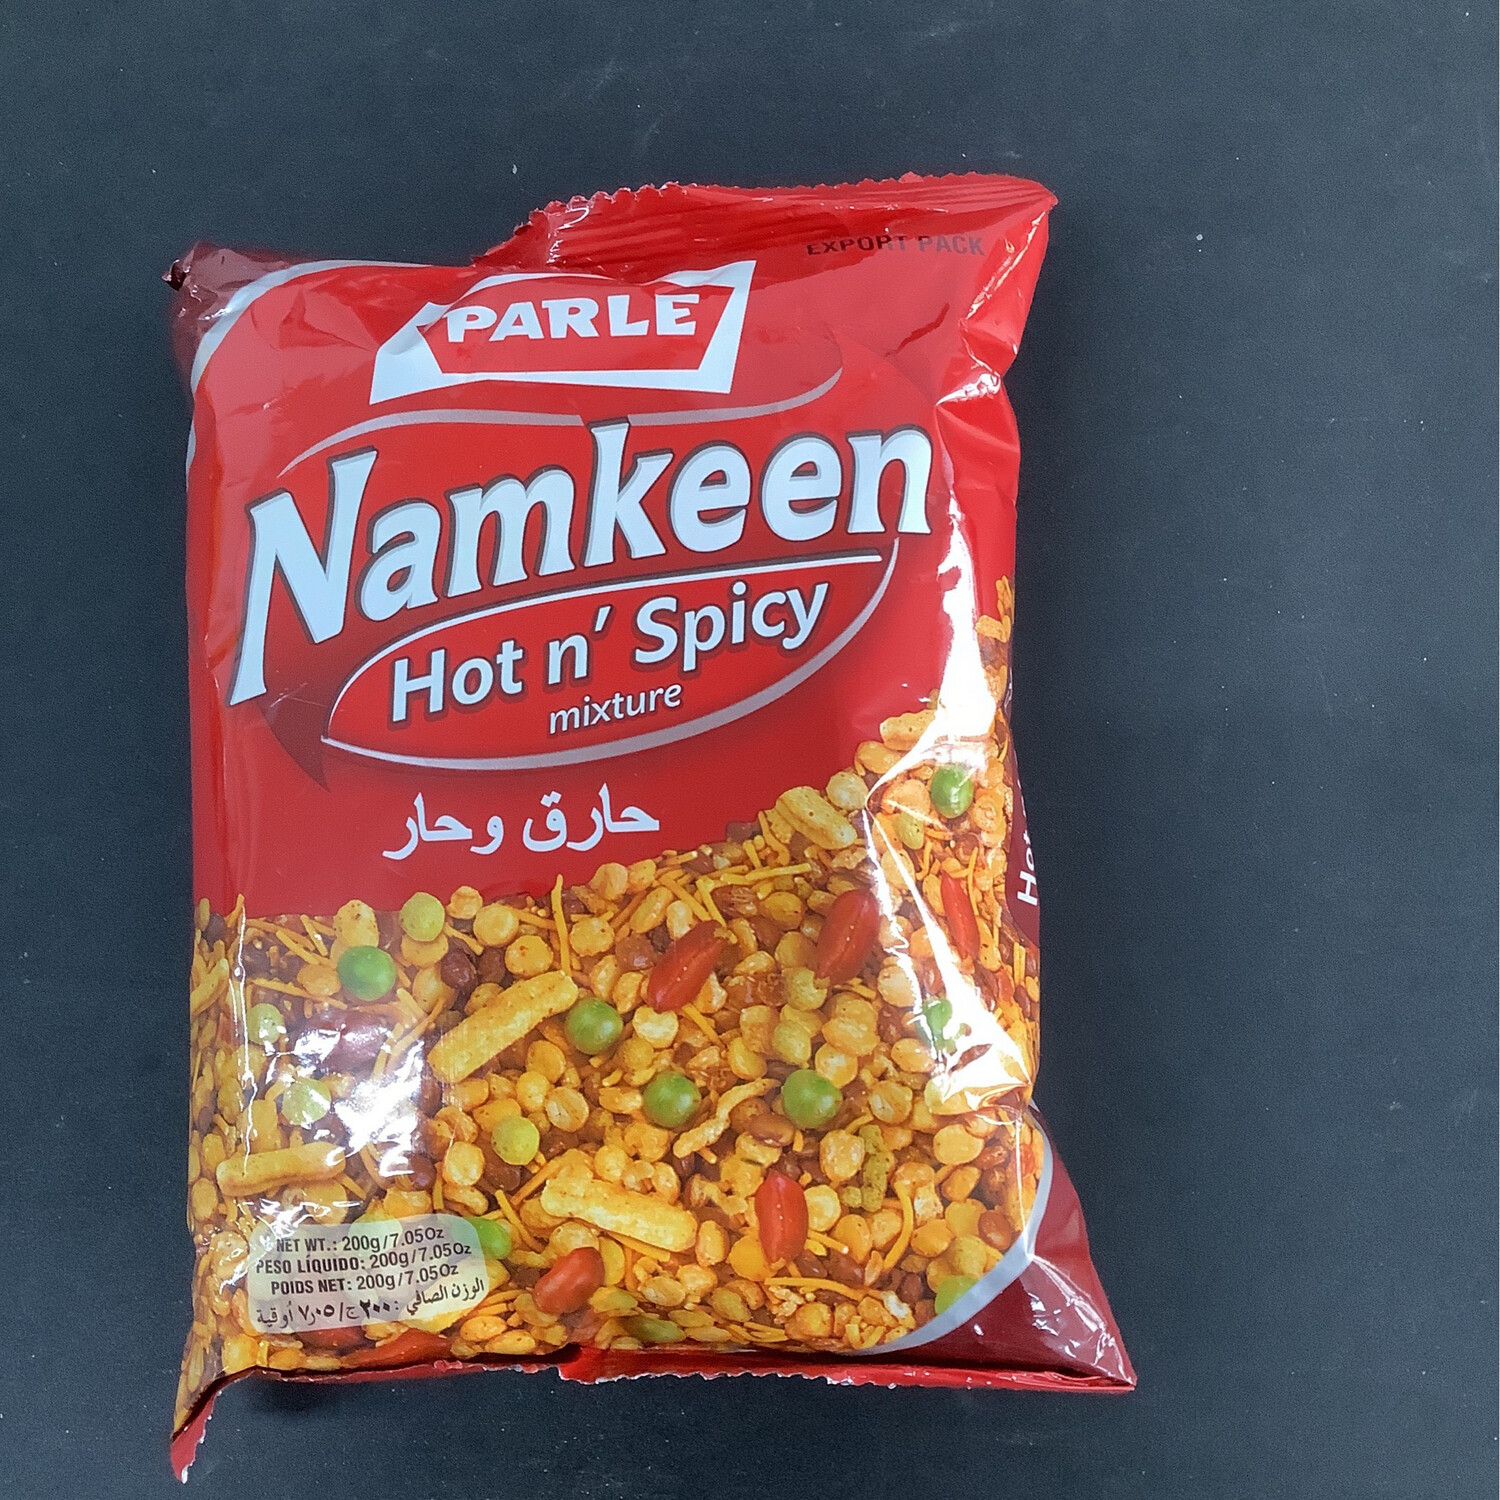 Parle Namkeen Hot n‘ Spicy mixture 200g